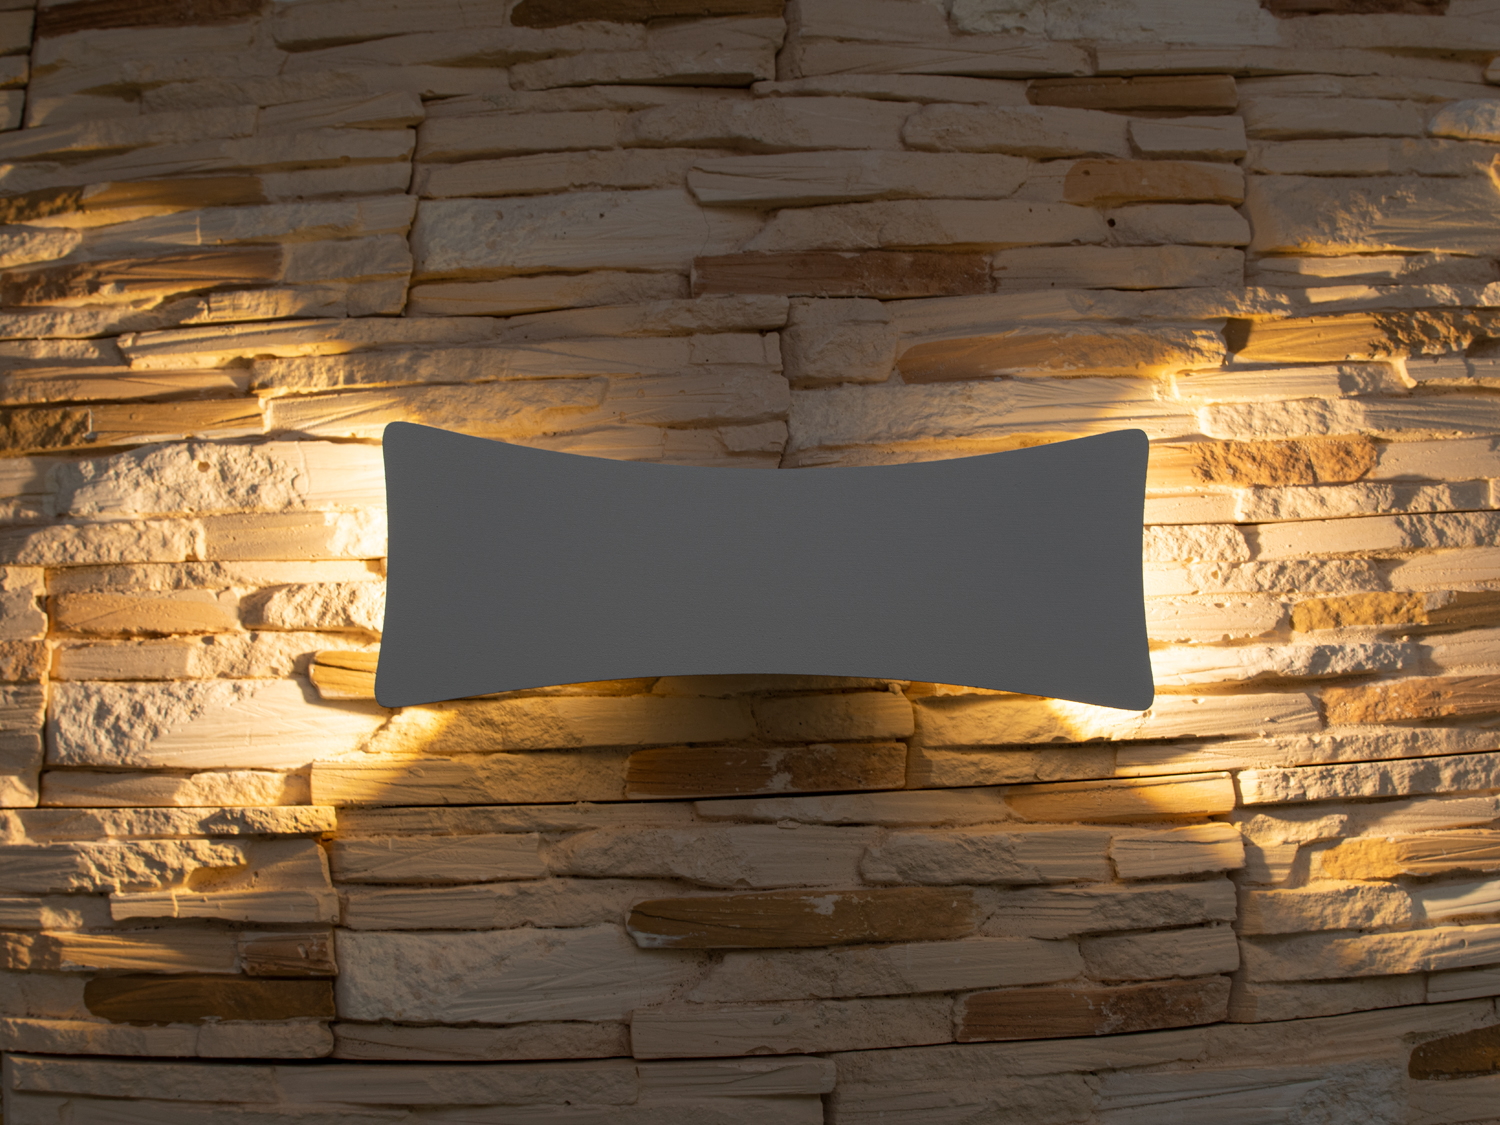 Фасадний світильник володіє малими розмірами та високою світловіддачею. Кут розкриття променя 90 °. Не виділяється на фасаді вдень, при цьому здатний повністю змінити вигляд будівлі вночі. На відміну від своїх попередників світлодіодні світильники для архітектурного підсвічування практично не виступають від стіни, а значить, світло практично повністю поширюється в площині стіни. Не потрапляє на віконні укоси, і, відповідно, не призводить до світлового забруднення приміщень усередині будівлі як звичайні вуличні ліхтарі.
Простір перед світильником м'яко освітлюється світлом, що відбивається від поверхні стіни. Такі світильники не створюють дискомфорту для очей у темну пору доби.

Також може бути використаний у приміщенні. У сучасному інтер'єрі такий світильник створить невимушене бічне освітлення і стане стильною заміною звичайних бра.